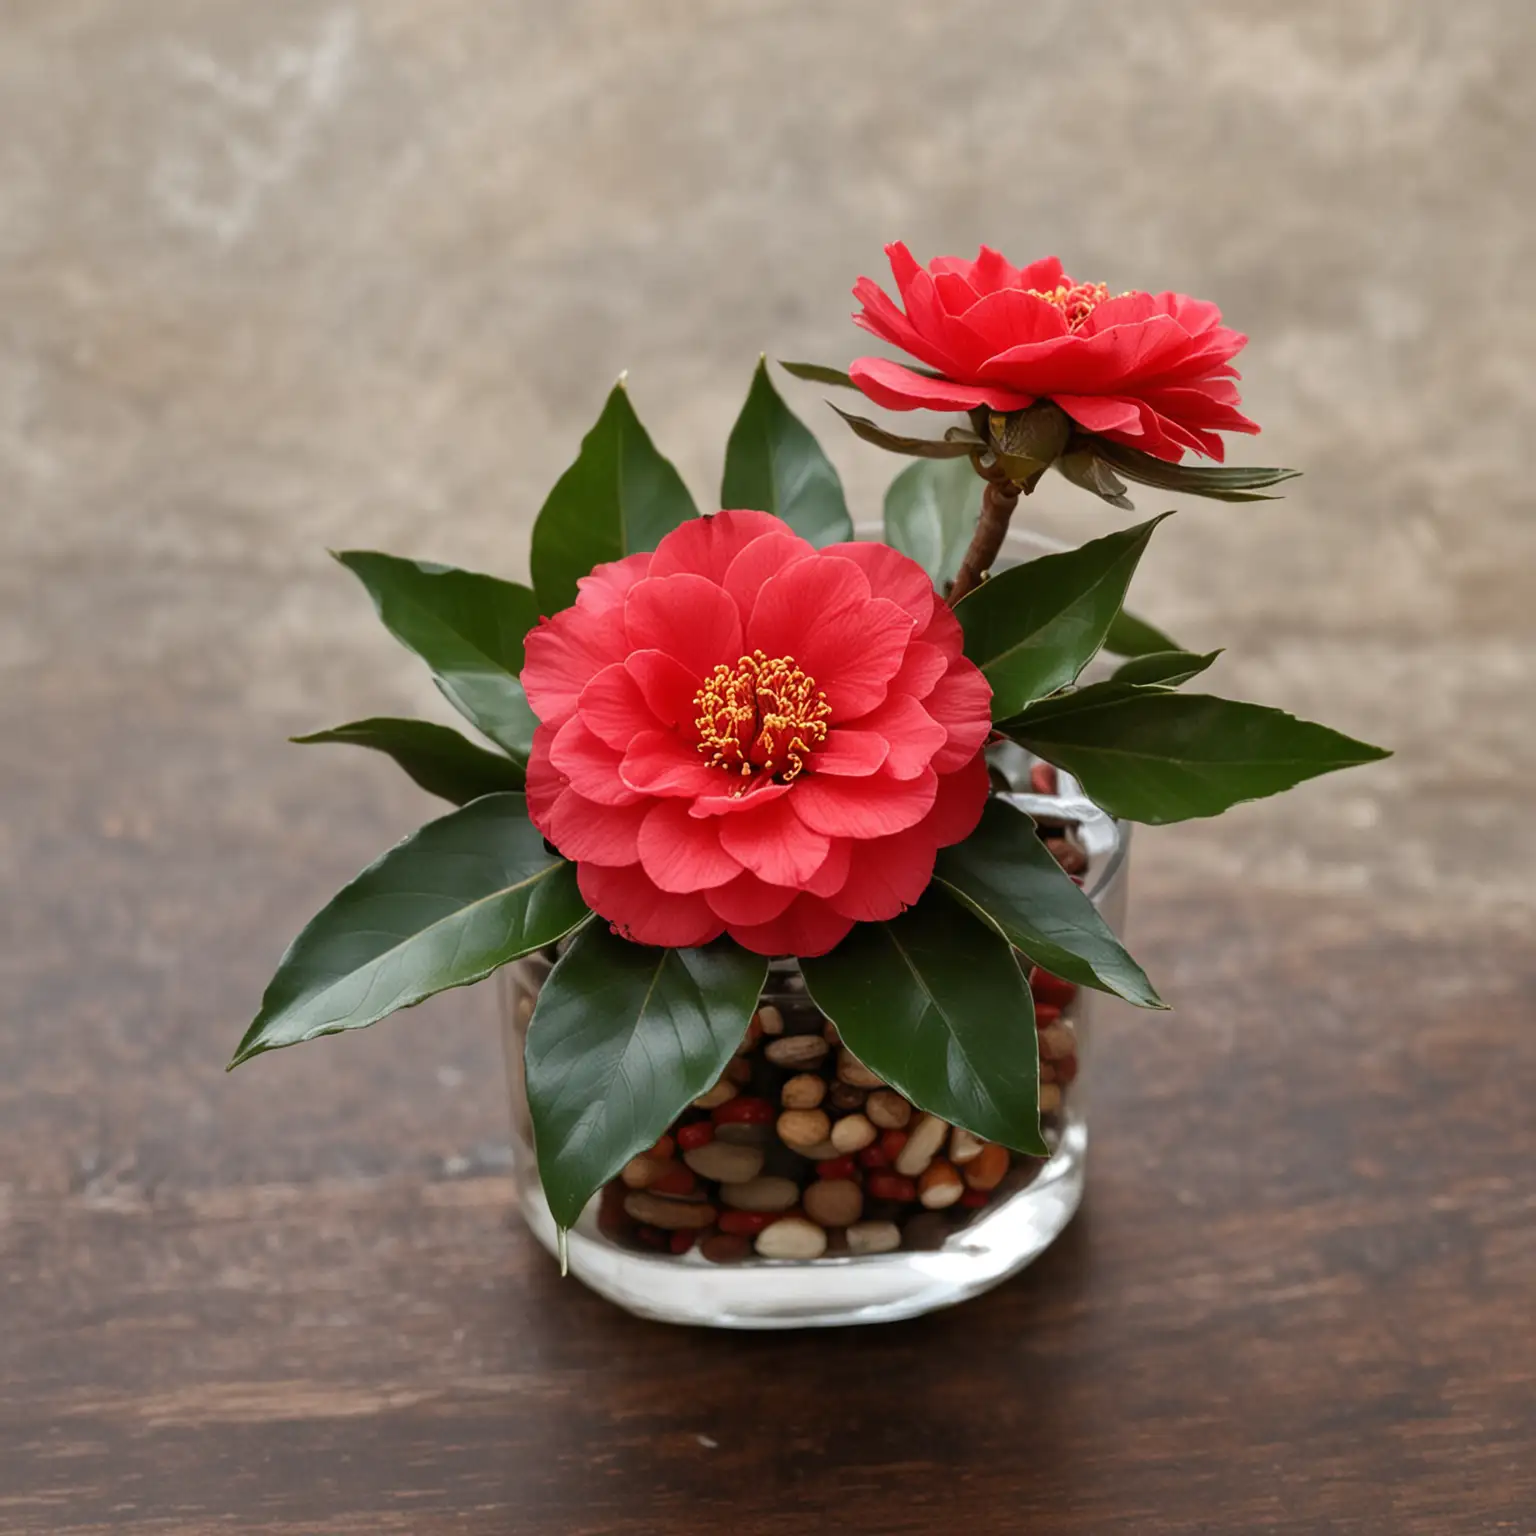 Elegant-Winter-Centerpiece-with-Red-Camellias-Festive-Floral-Arrangement